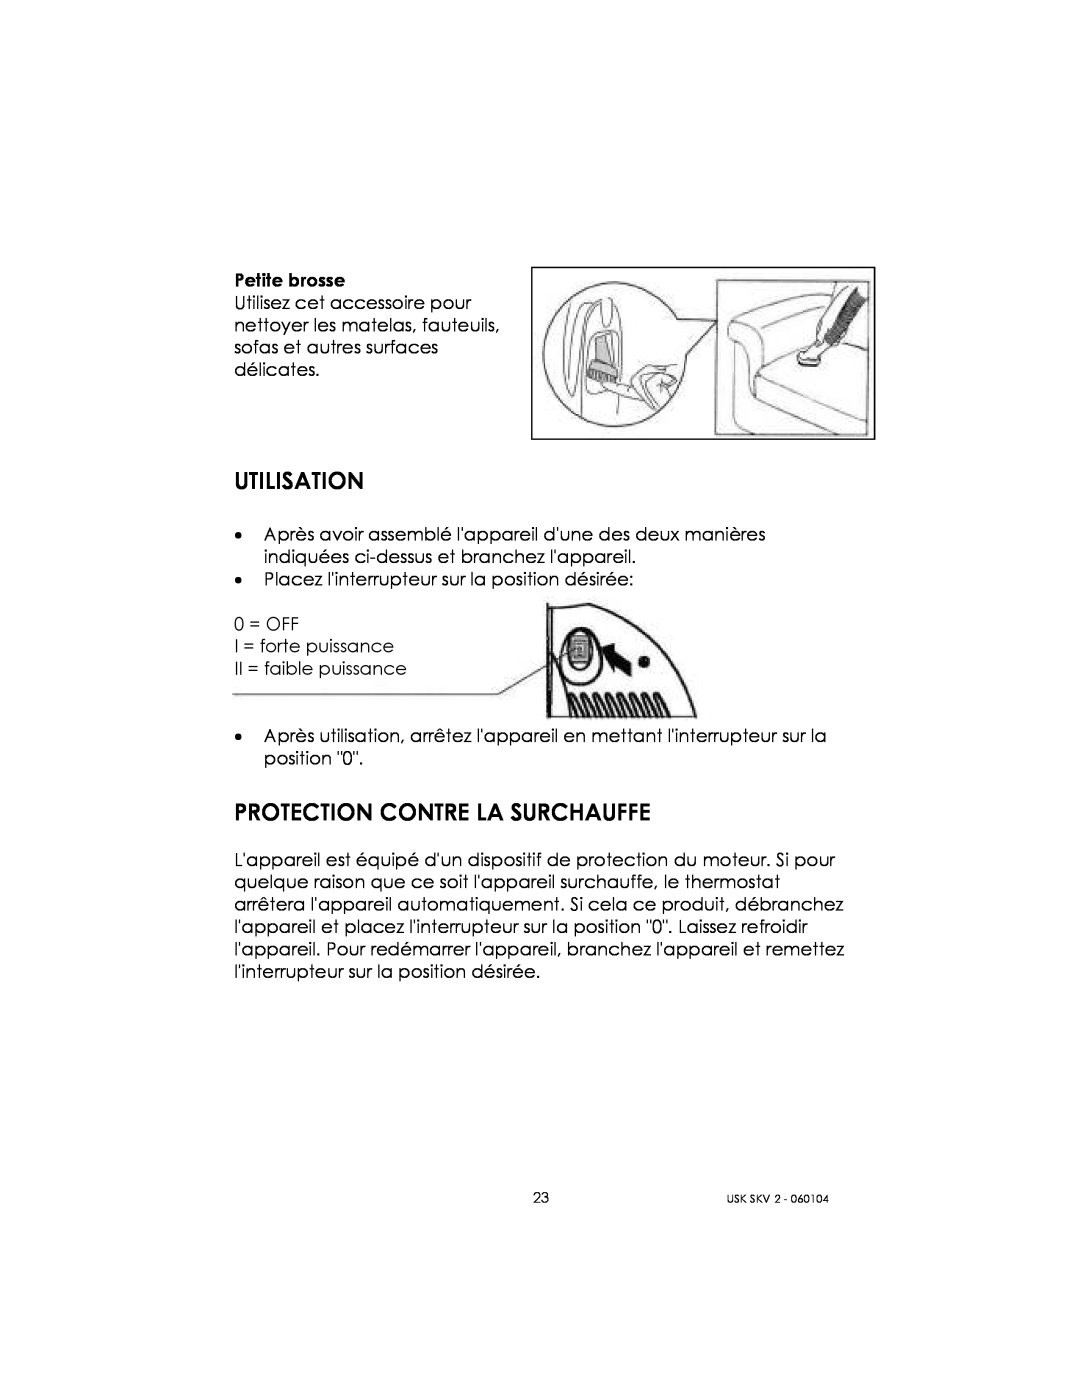 Kalorik USK SKV 2 manual Utilisation, Protection Contre La Surchauffe 